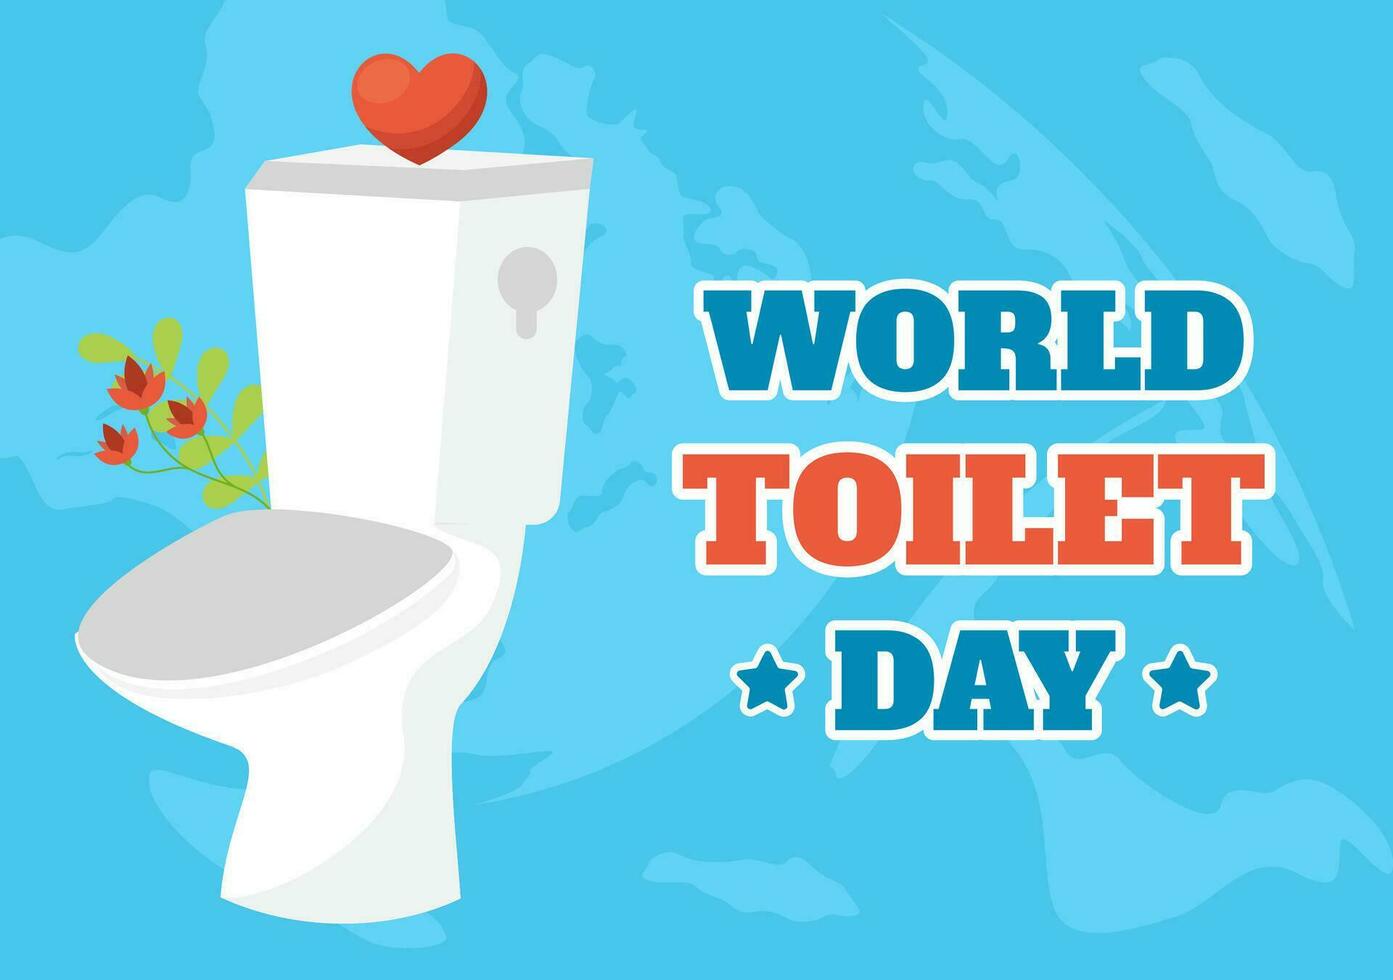 Welt Toilette Tag Vektor Illustration auf 19 November mit Erde und Ausrüstung zum Badezimmer Hygiene Bewusstsein im eben Karikatur Hintergrund Design